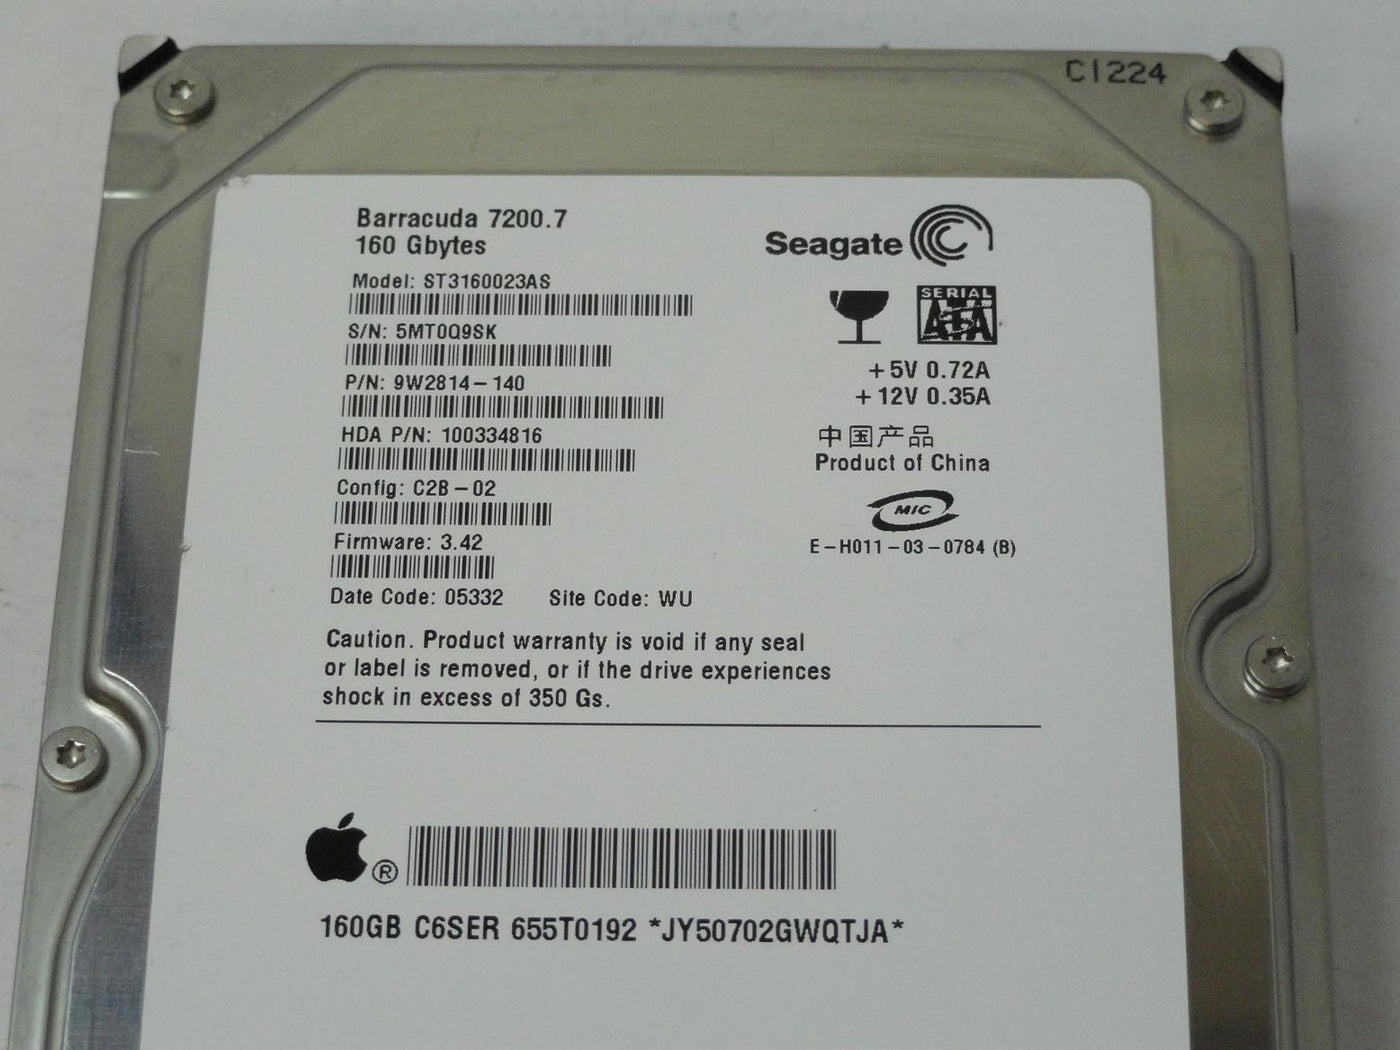 PR15002_9W2814-140_Seagate Apple 160GB SATA 7200rpm 3.5in HDD - Image3